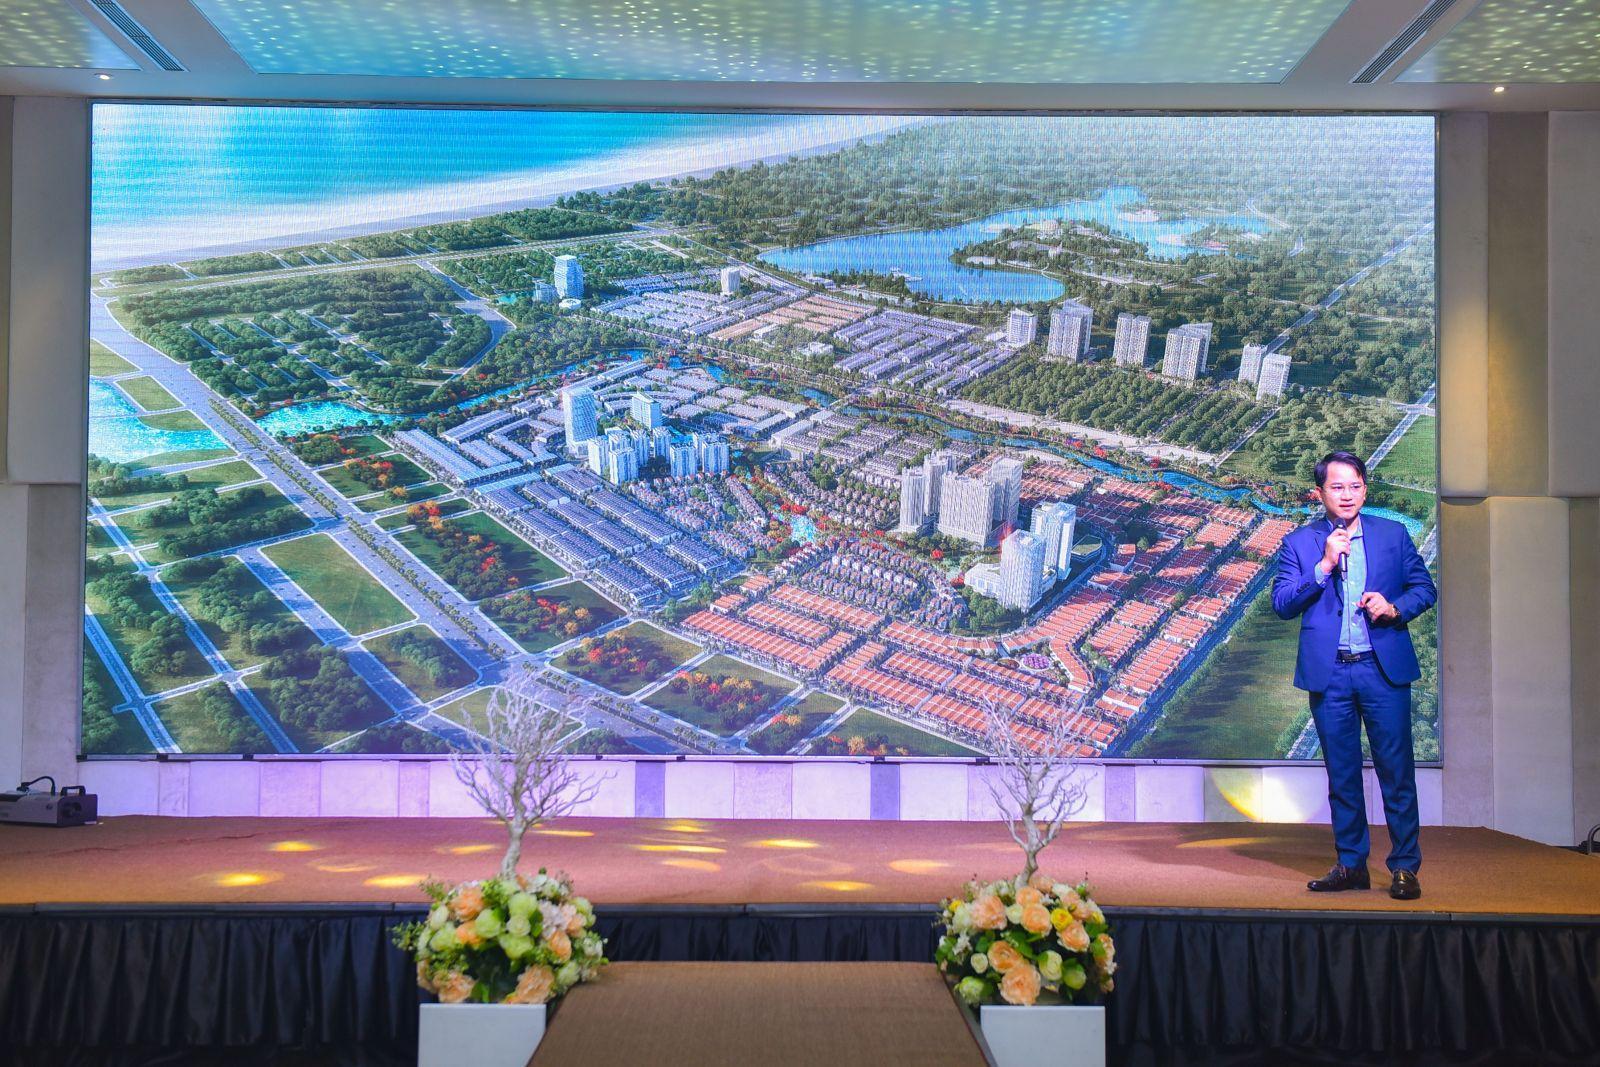 THÀNH CÔNG ĐẾN TỪ SỰ KIỆN “LỄ MỞ BÁN CÁC SẢN PHẨM BẤT ĐỘNG SẢN CAO CẤP TẠI TRUNG TÂM ĐÀ NẴNG” - Viet Nam Smart City